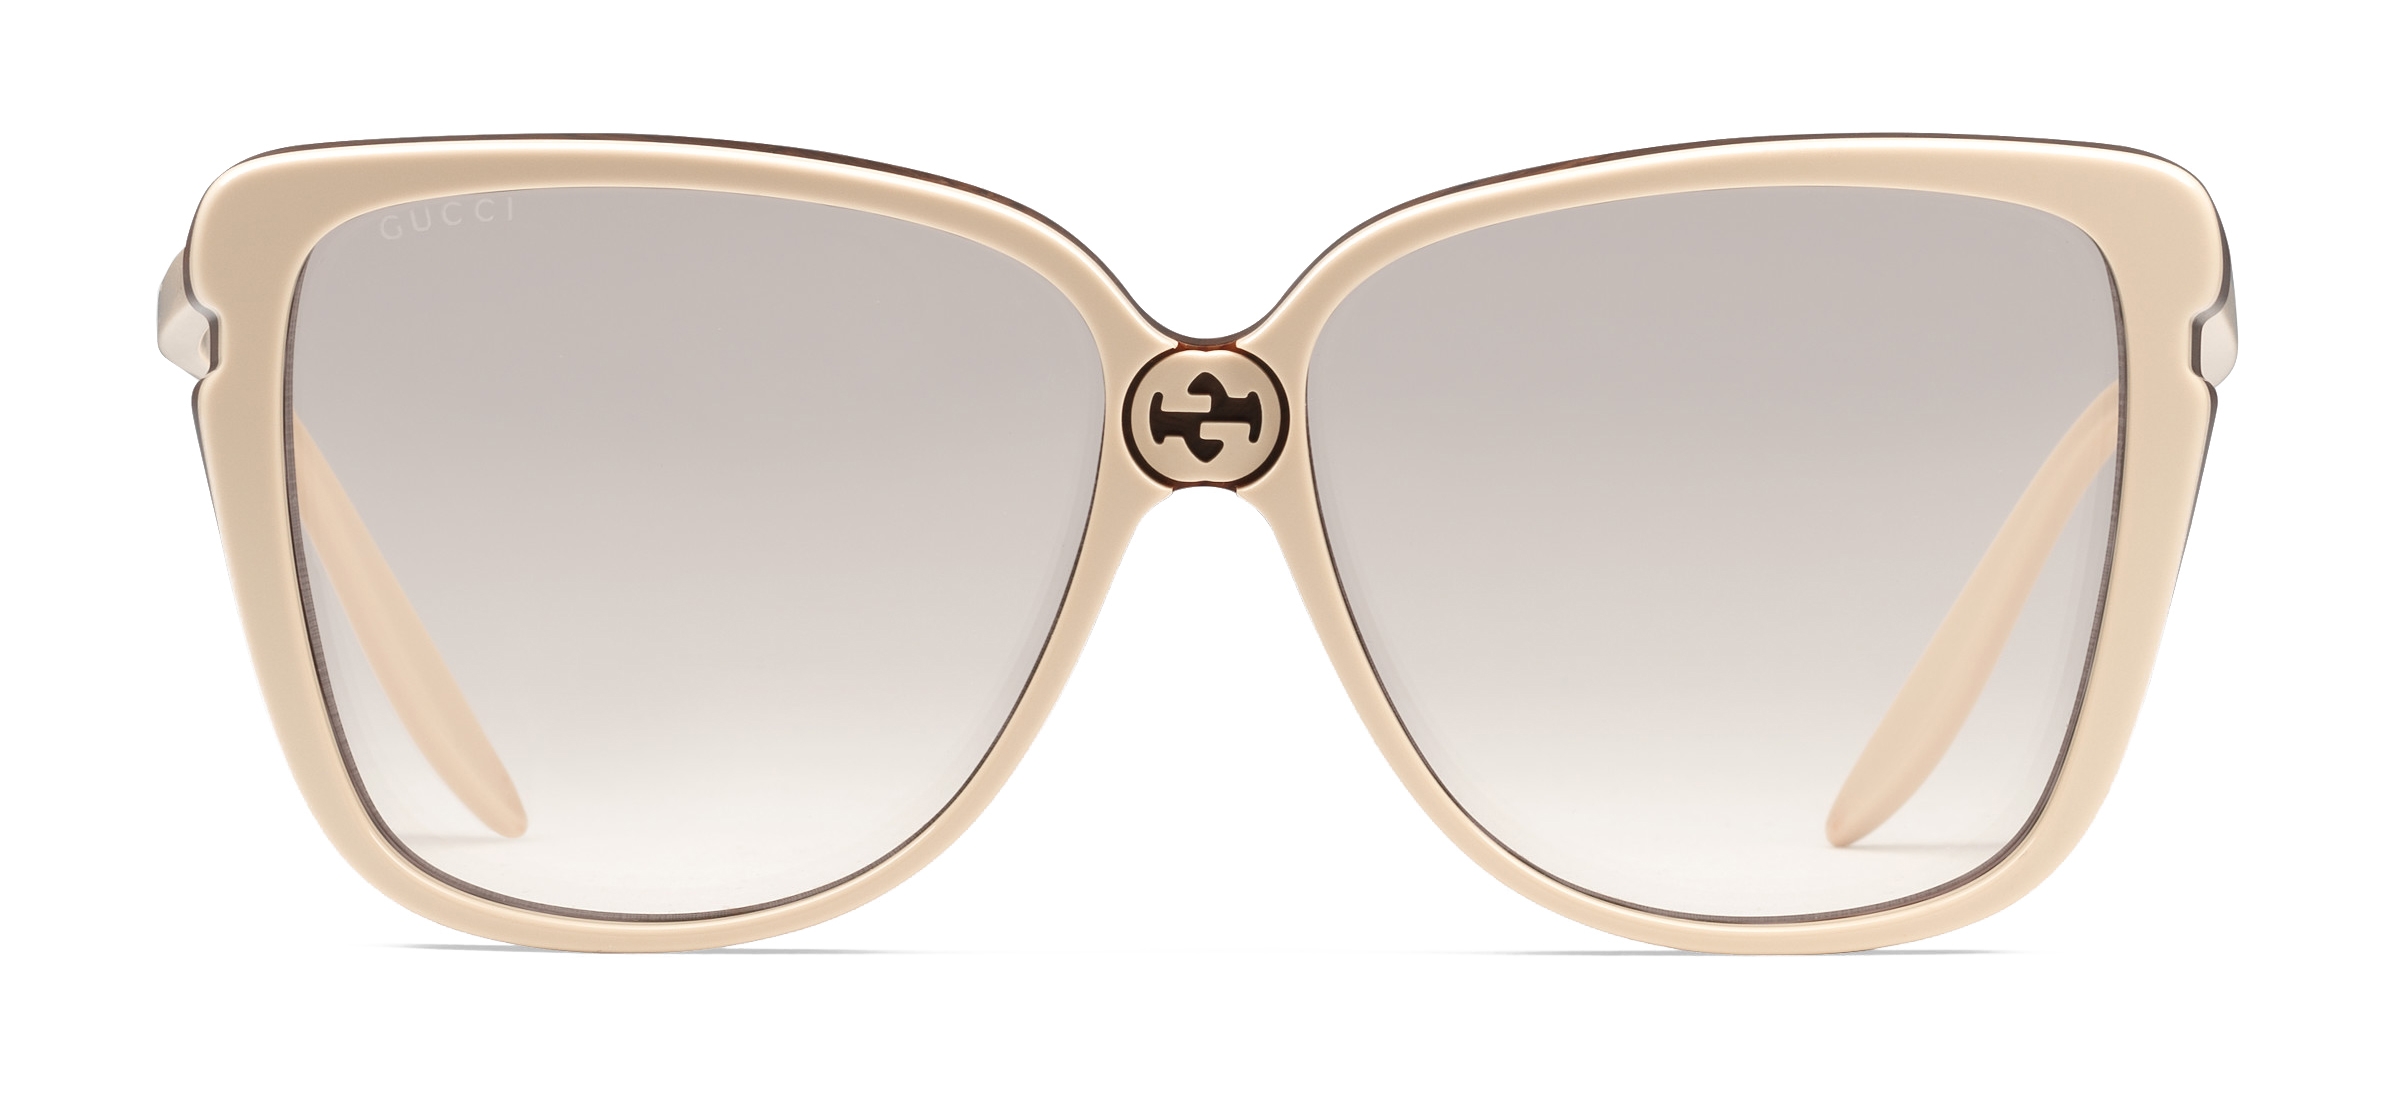 gucci cruise sunglasses